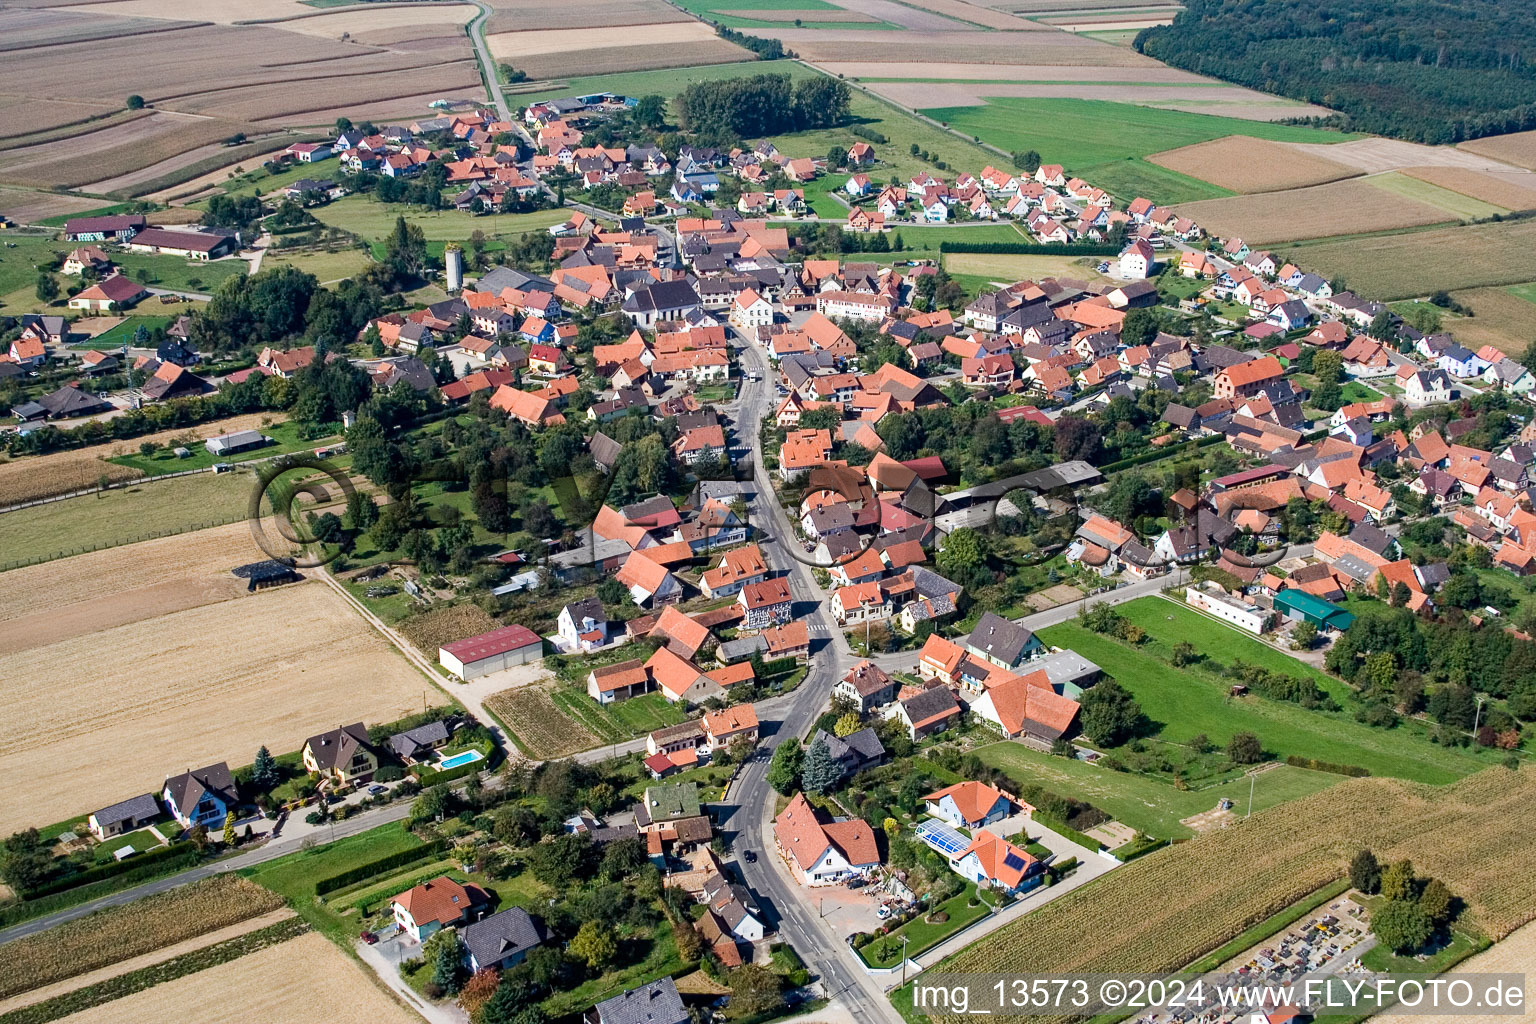 Luftbild von Dorf - Ansicht am Rande von landwirtschaftlichen Feldern und Nutzflächen in Salmbach in Grand Est im Bundesland Bas-Rhin, Frankreich